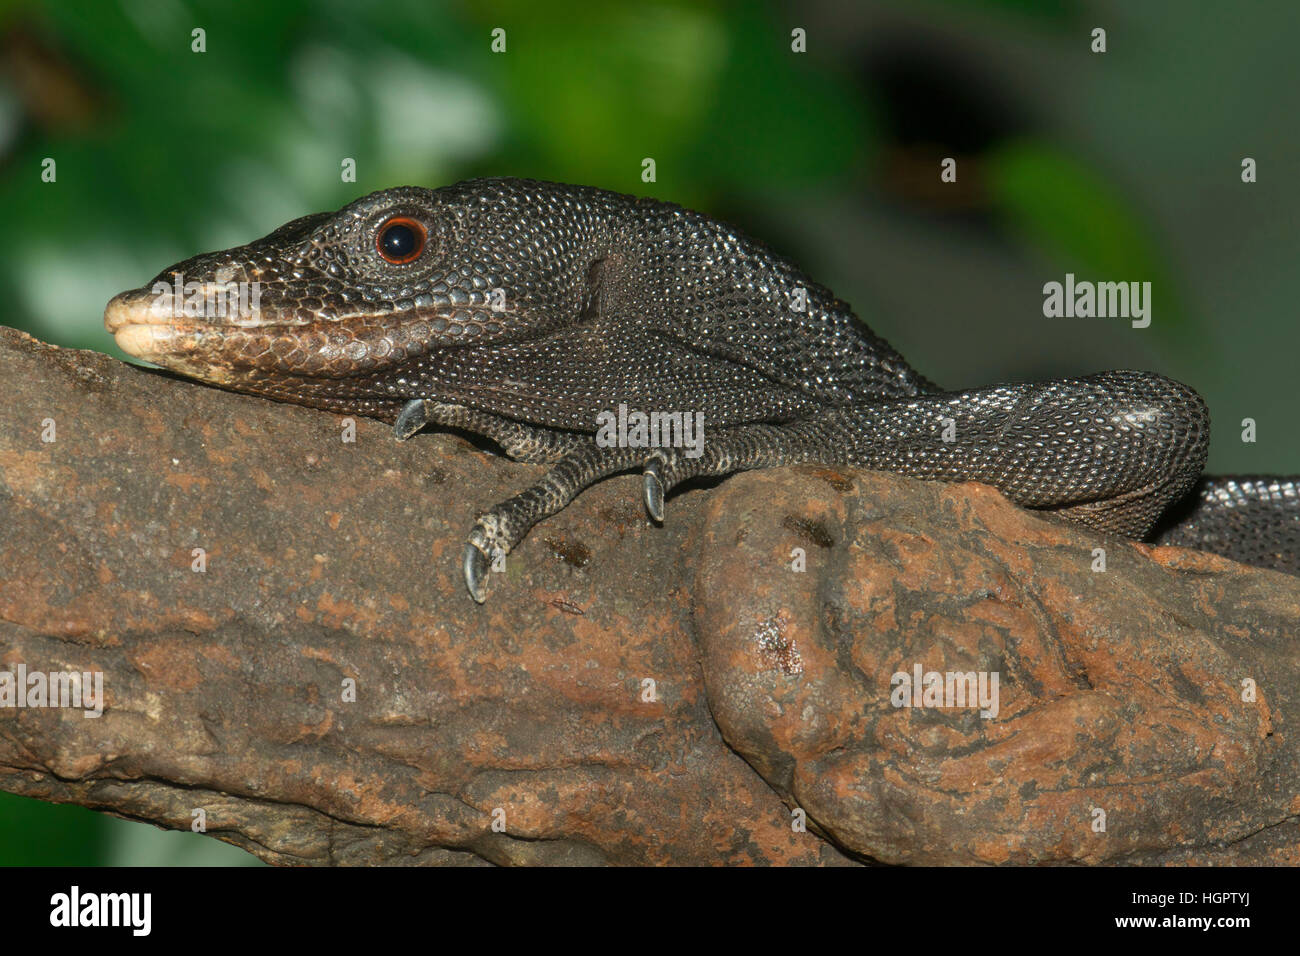 Reducción Hermana Amabilidad Jaula de lagartos fotografías e imágenes de alta resolución - Página 3 -  Alamy